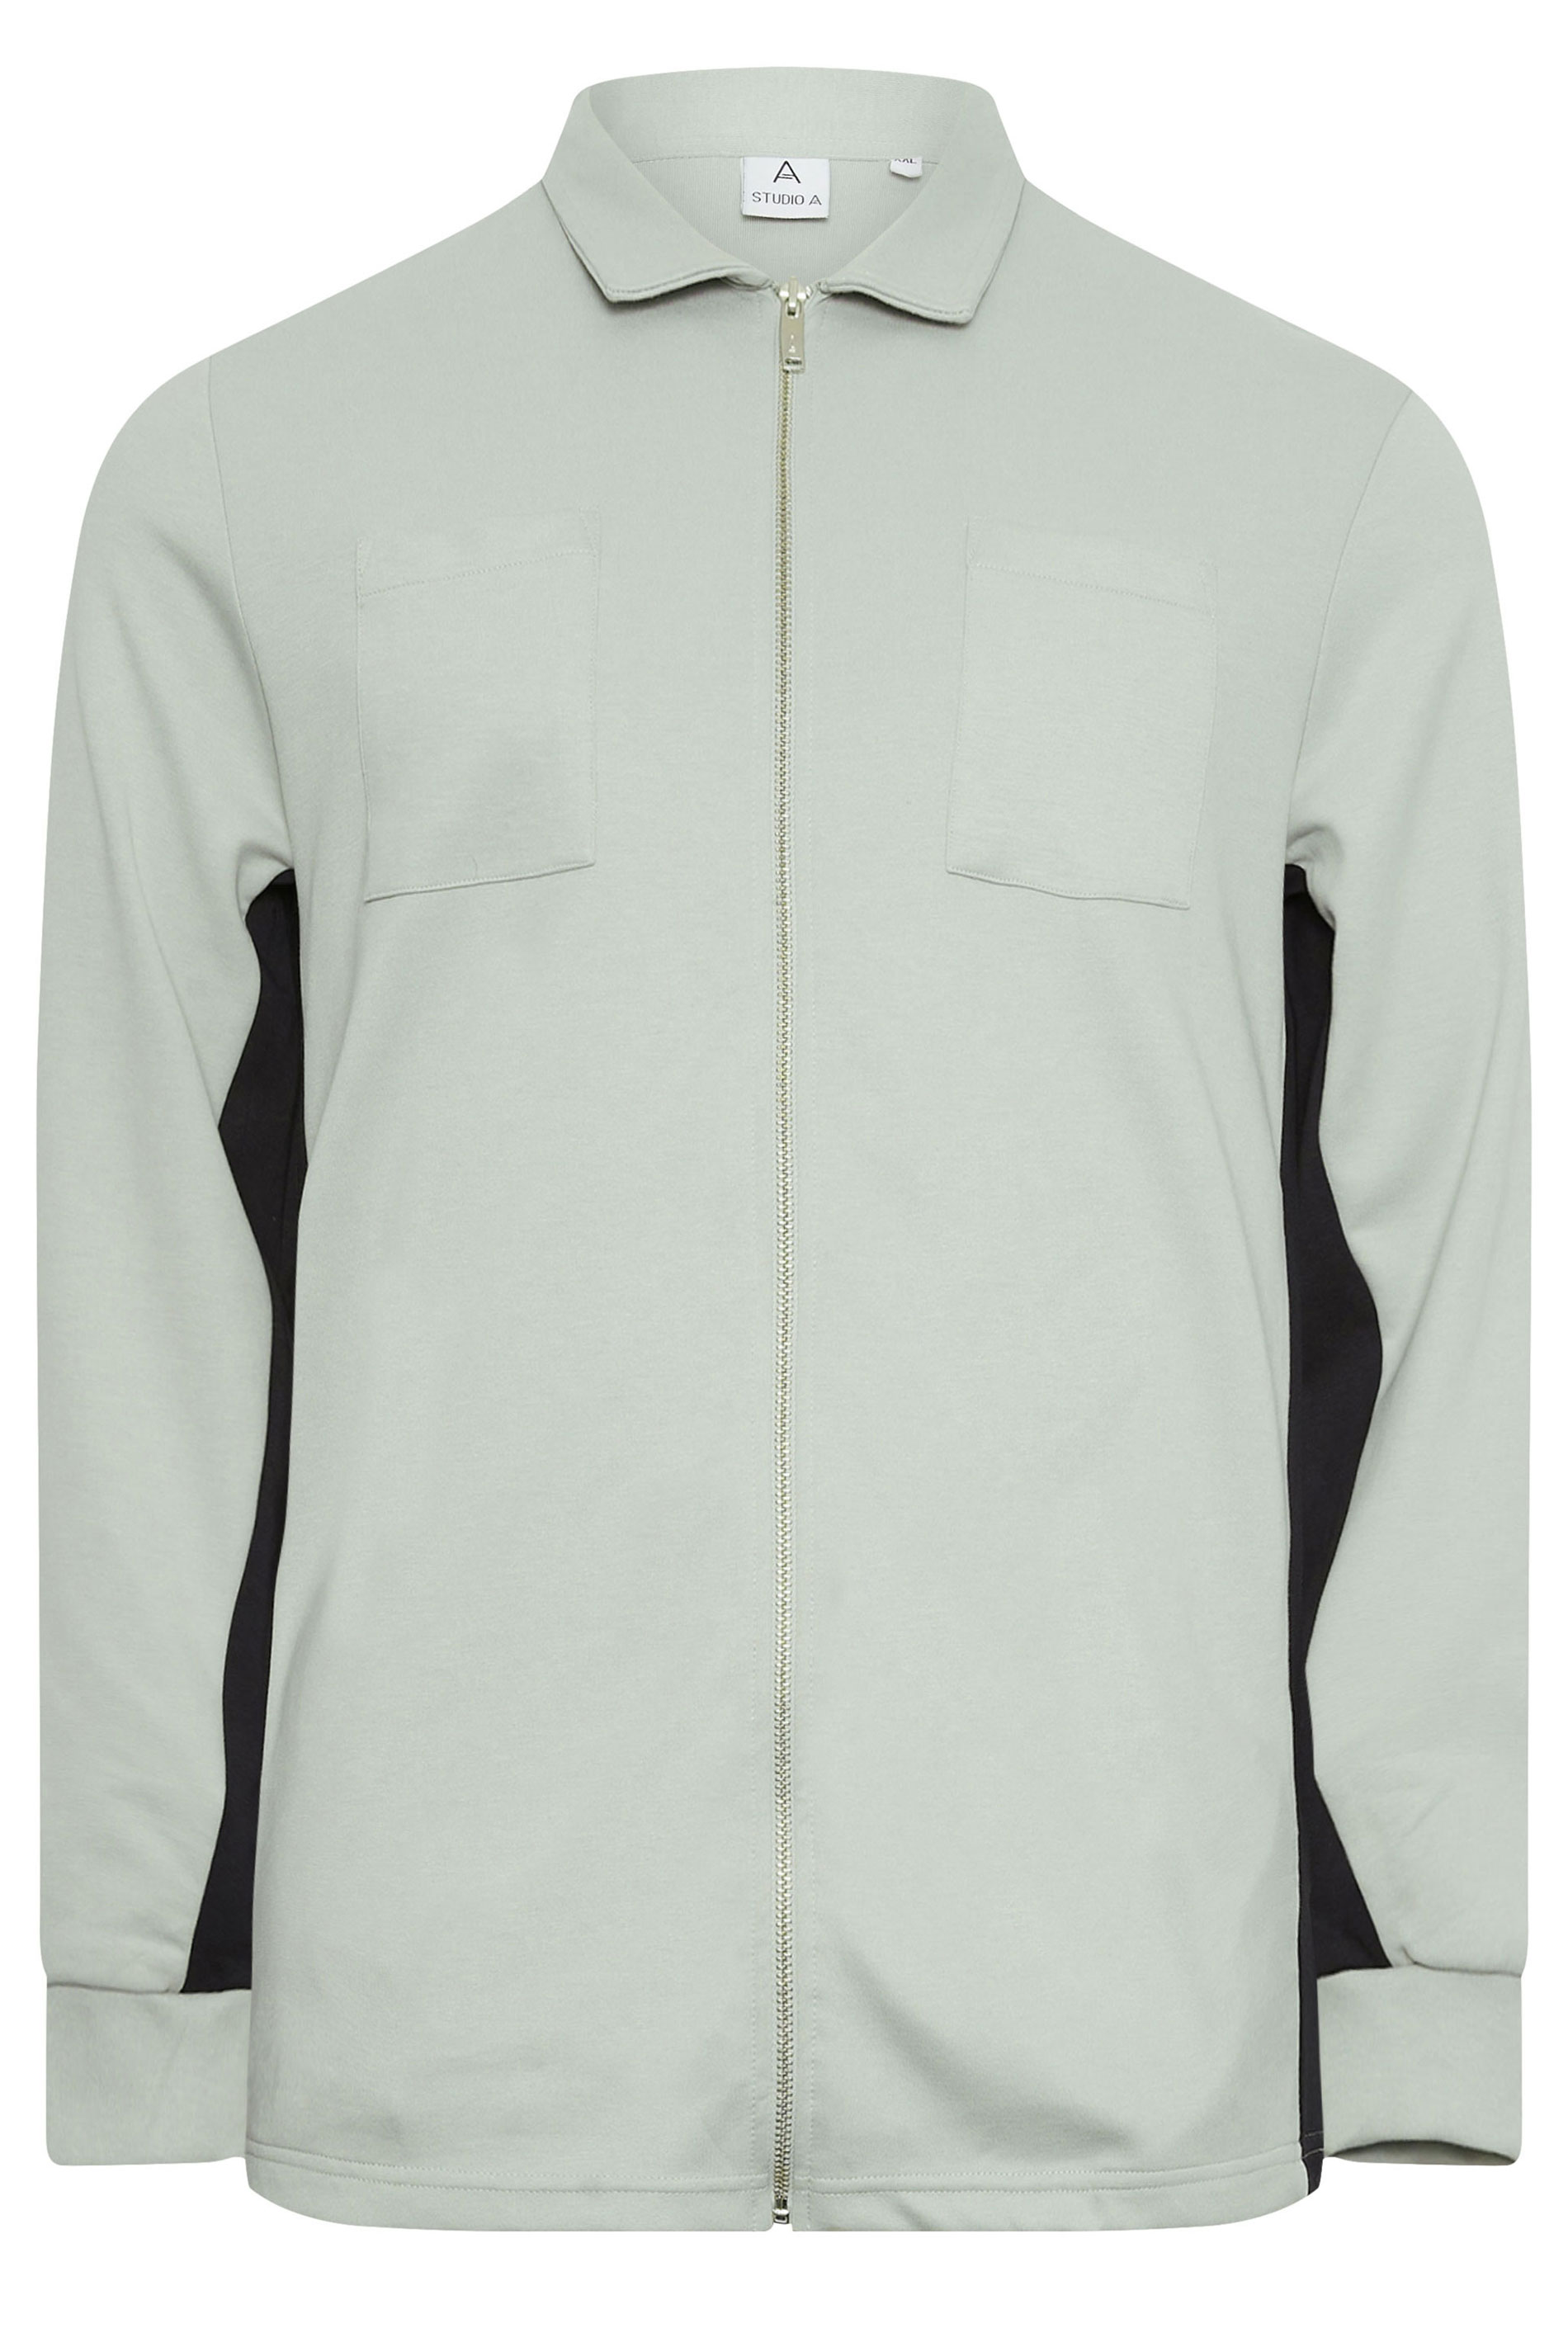 STUDIO A Big & Tall Grey Contrast Sleeve Collared Zip Up Jacket | BadRhino 2